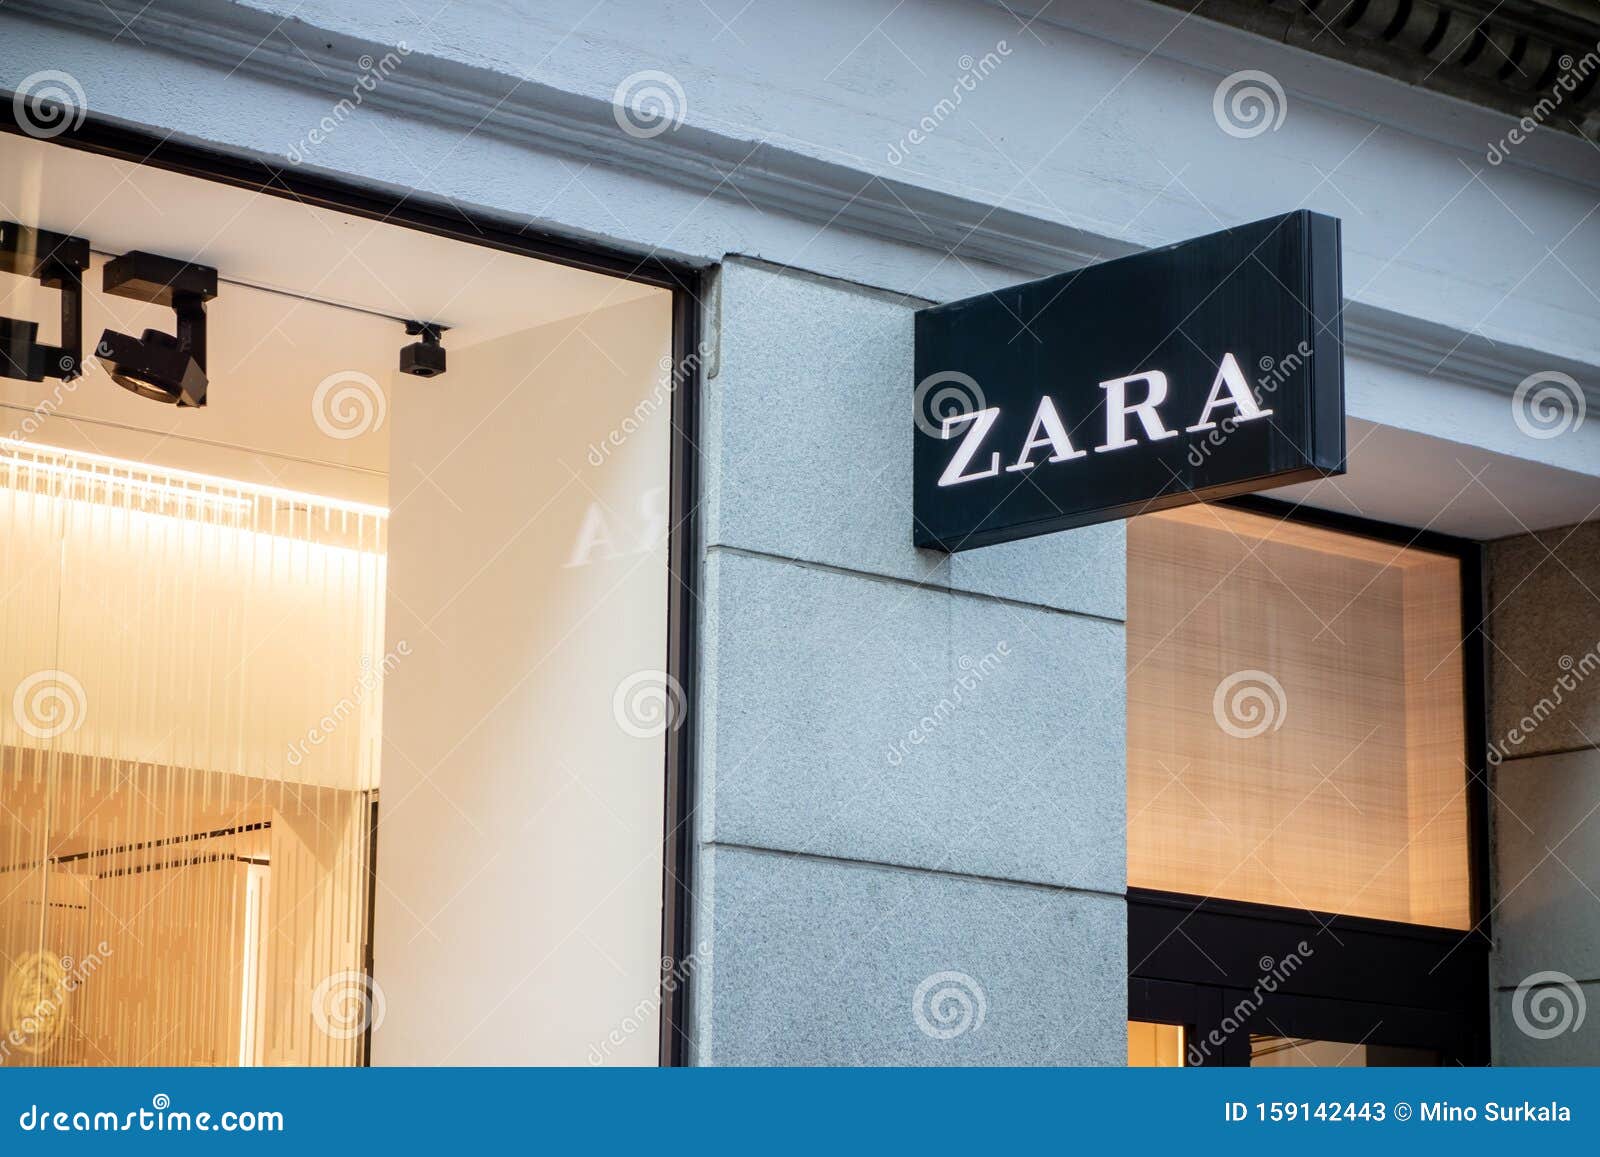 zara women shop